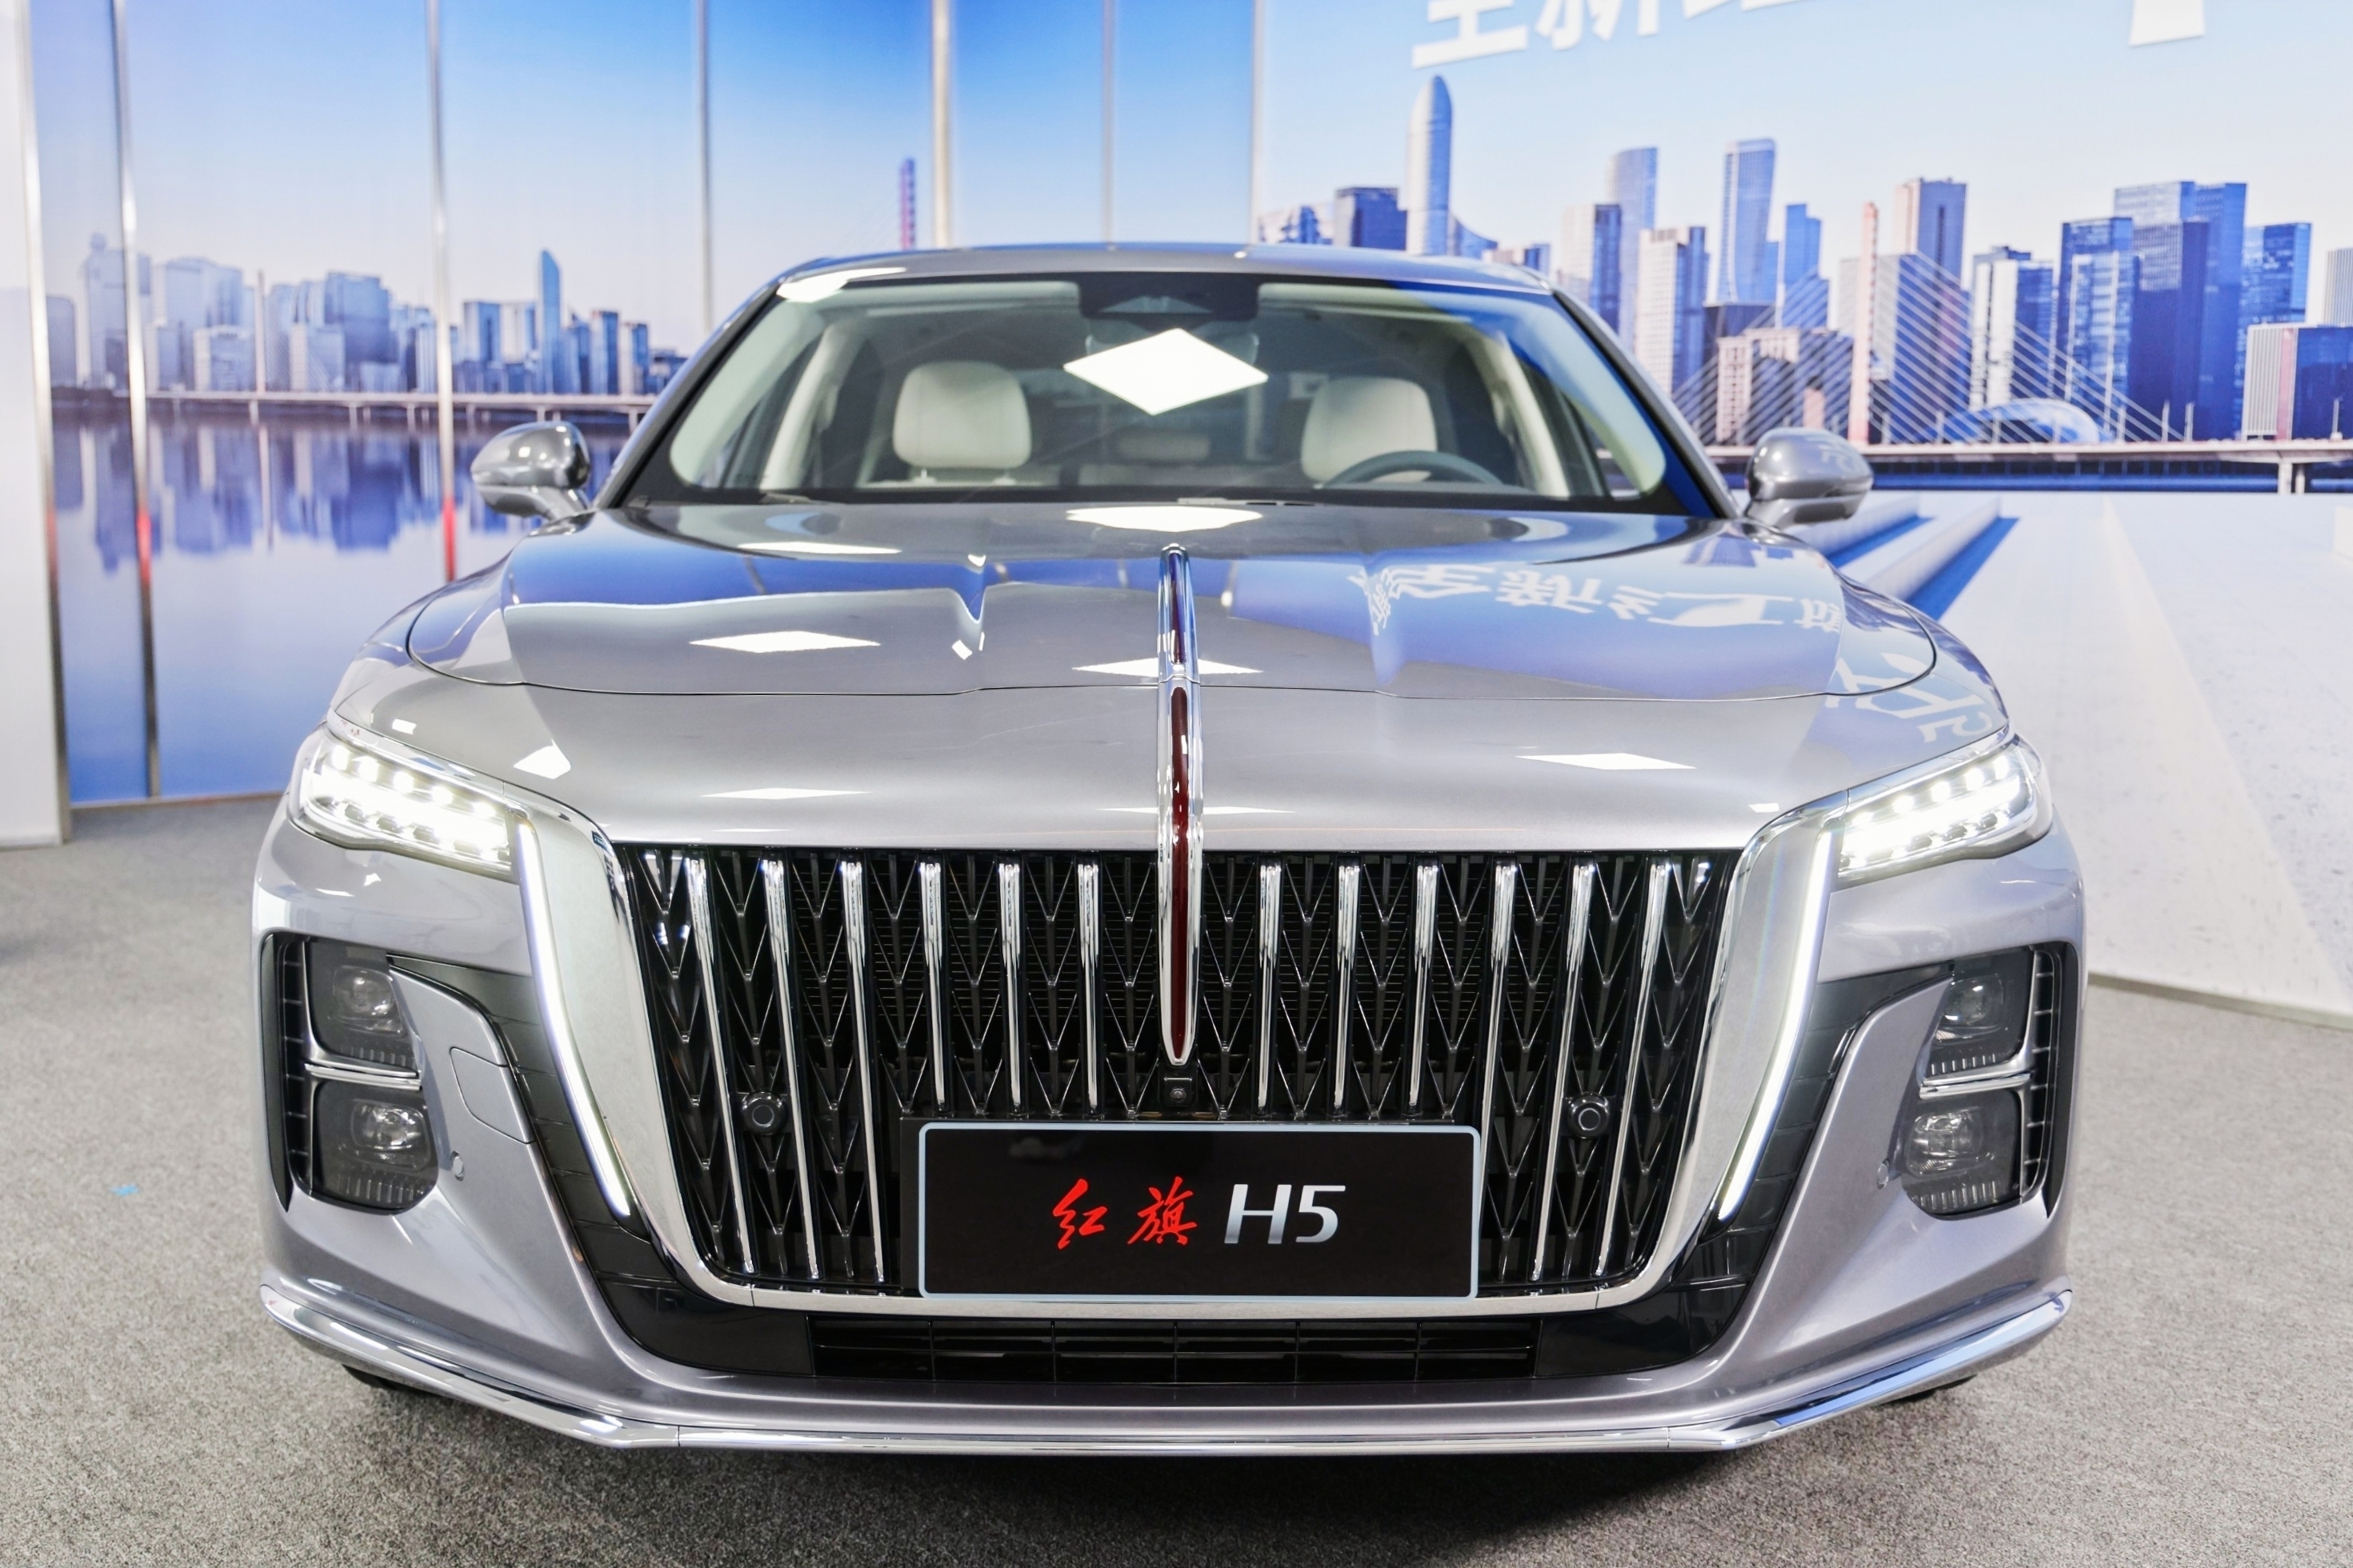 红旗h5开启预售预售价17万元起新混动系统亮相